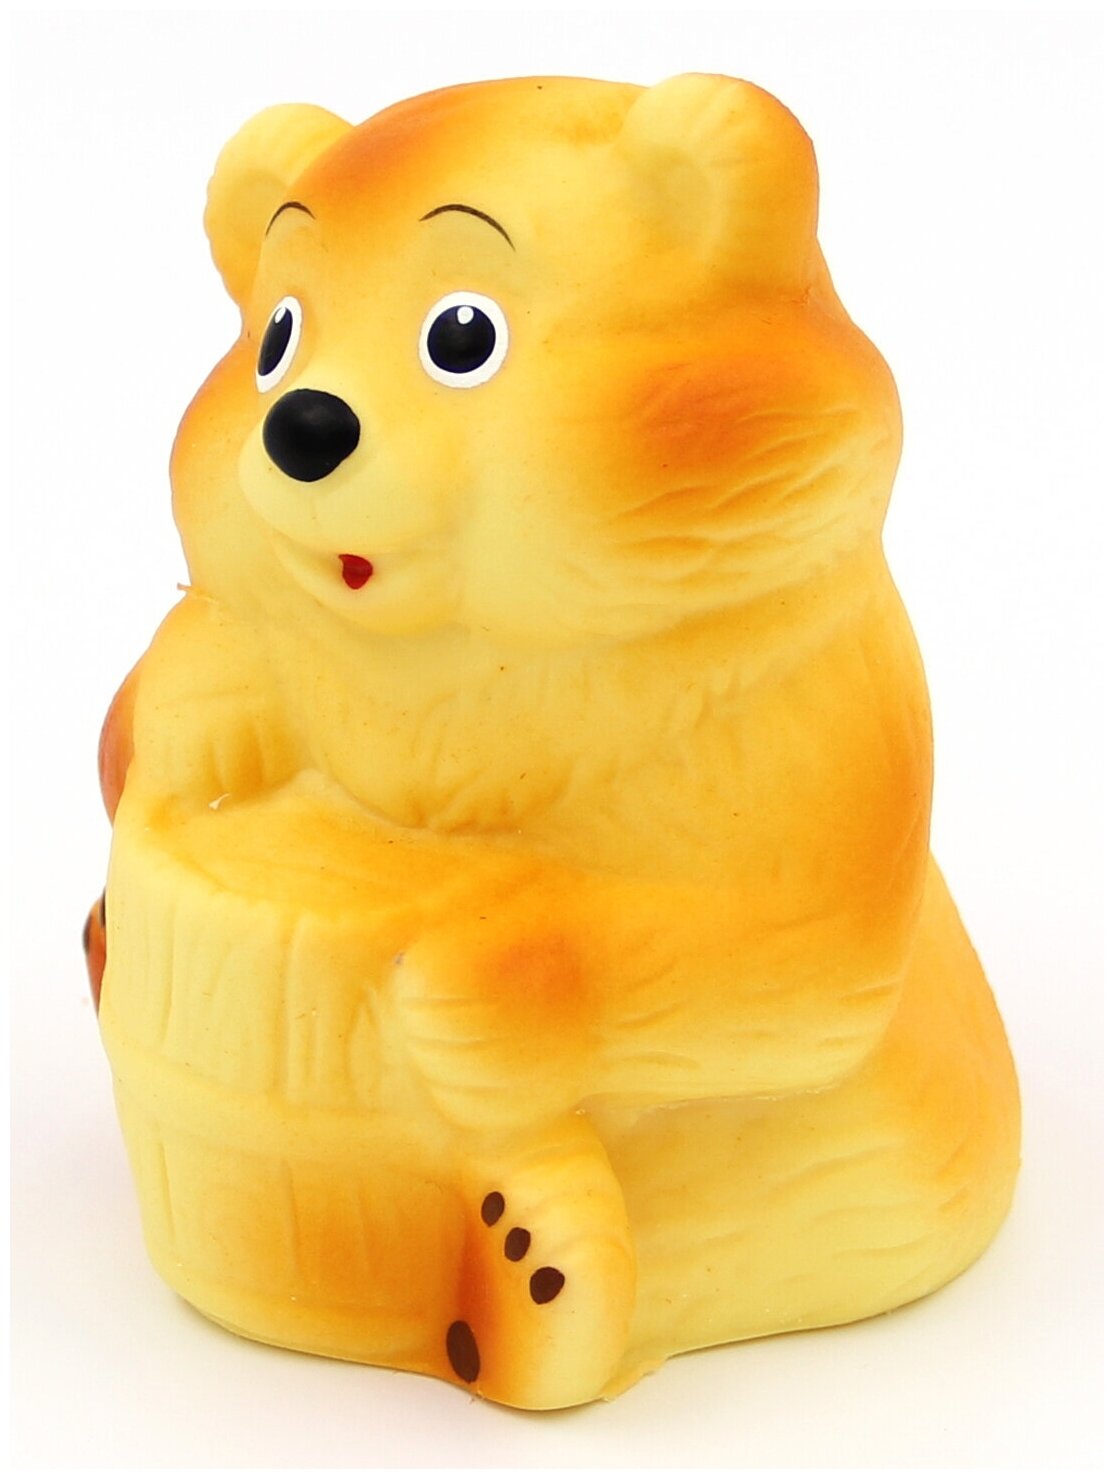 Кудесники: Медвежонок - фигурка-игрушка из ПВХ Пластизоля (Резиновая игрушка), СИ-234